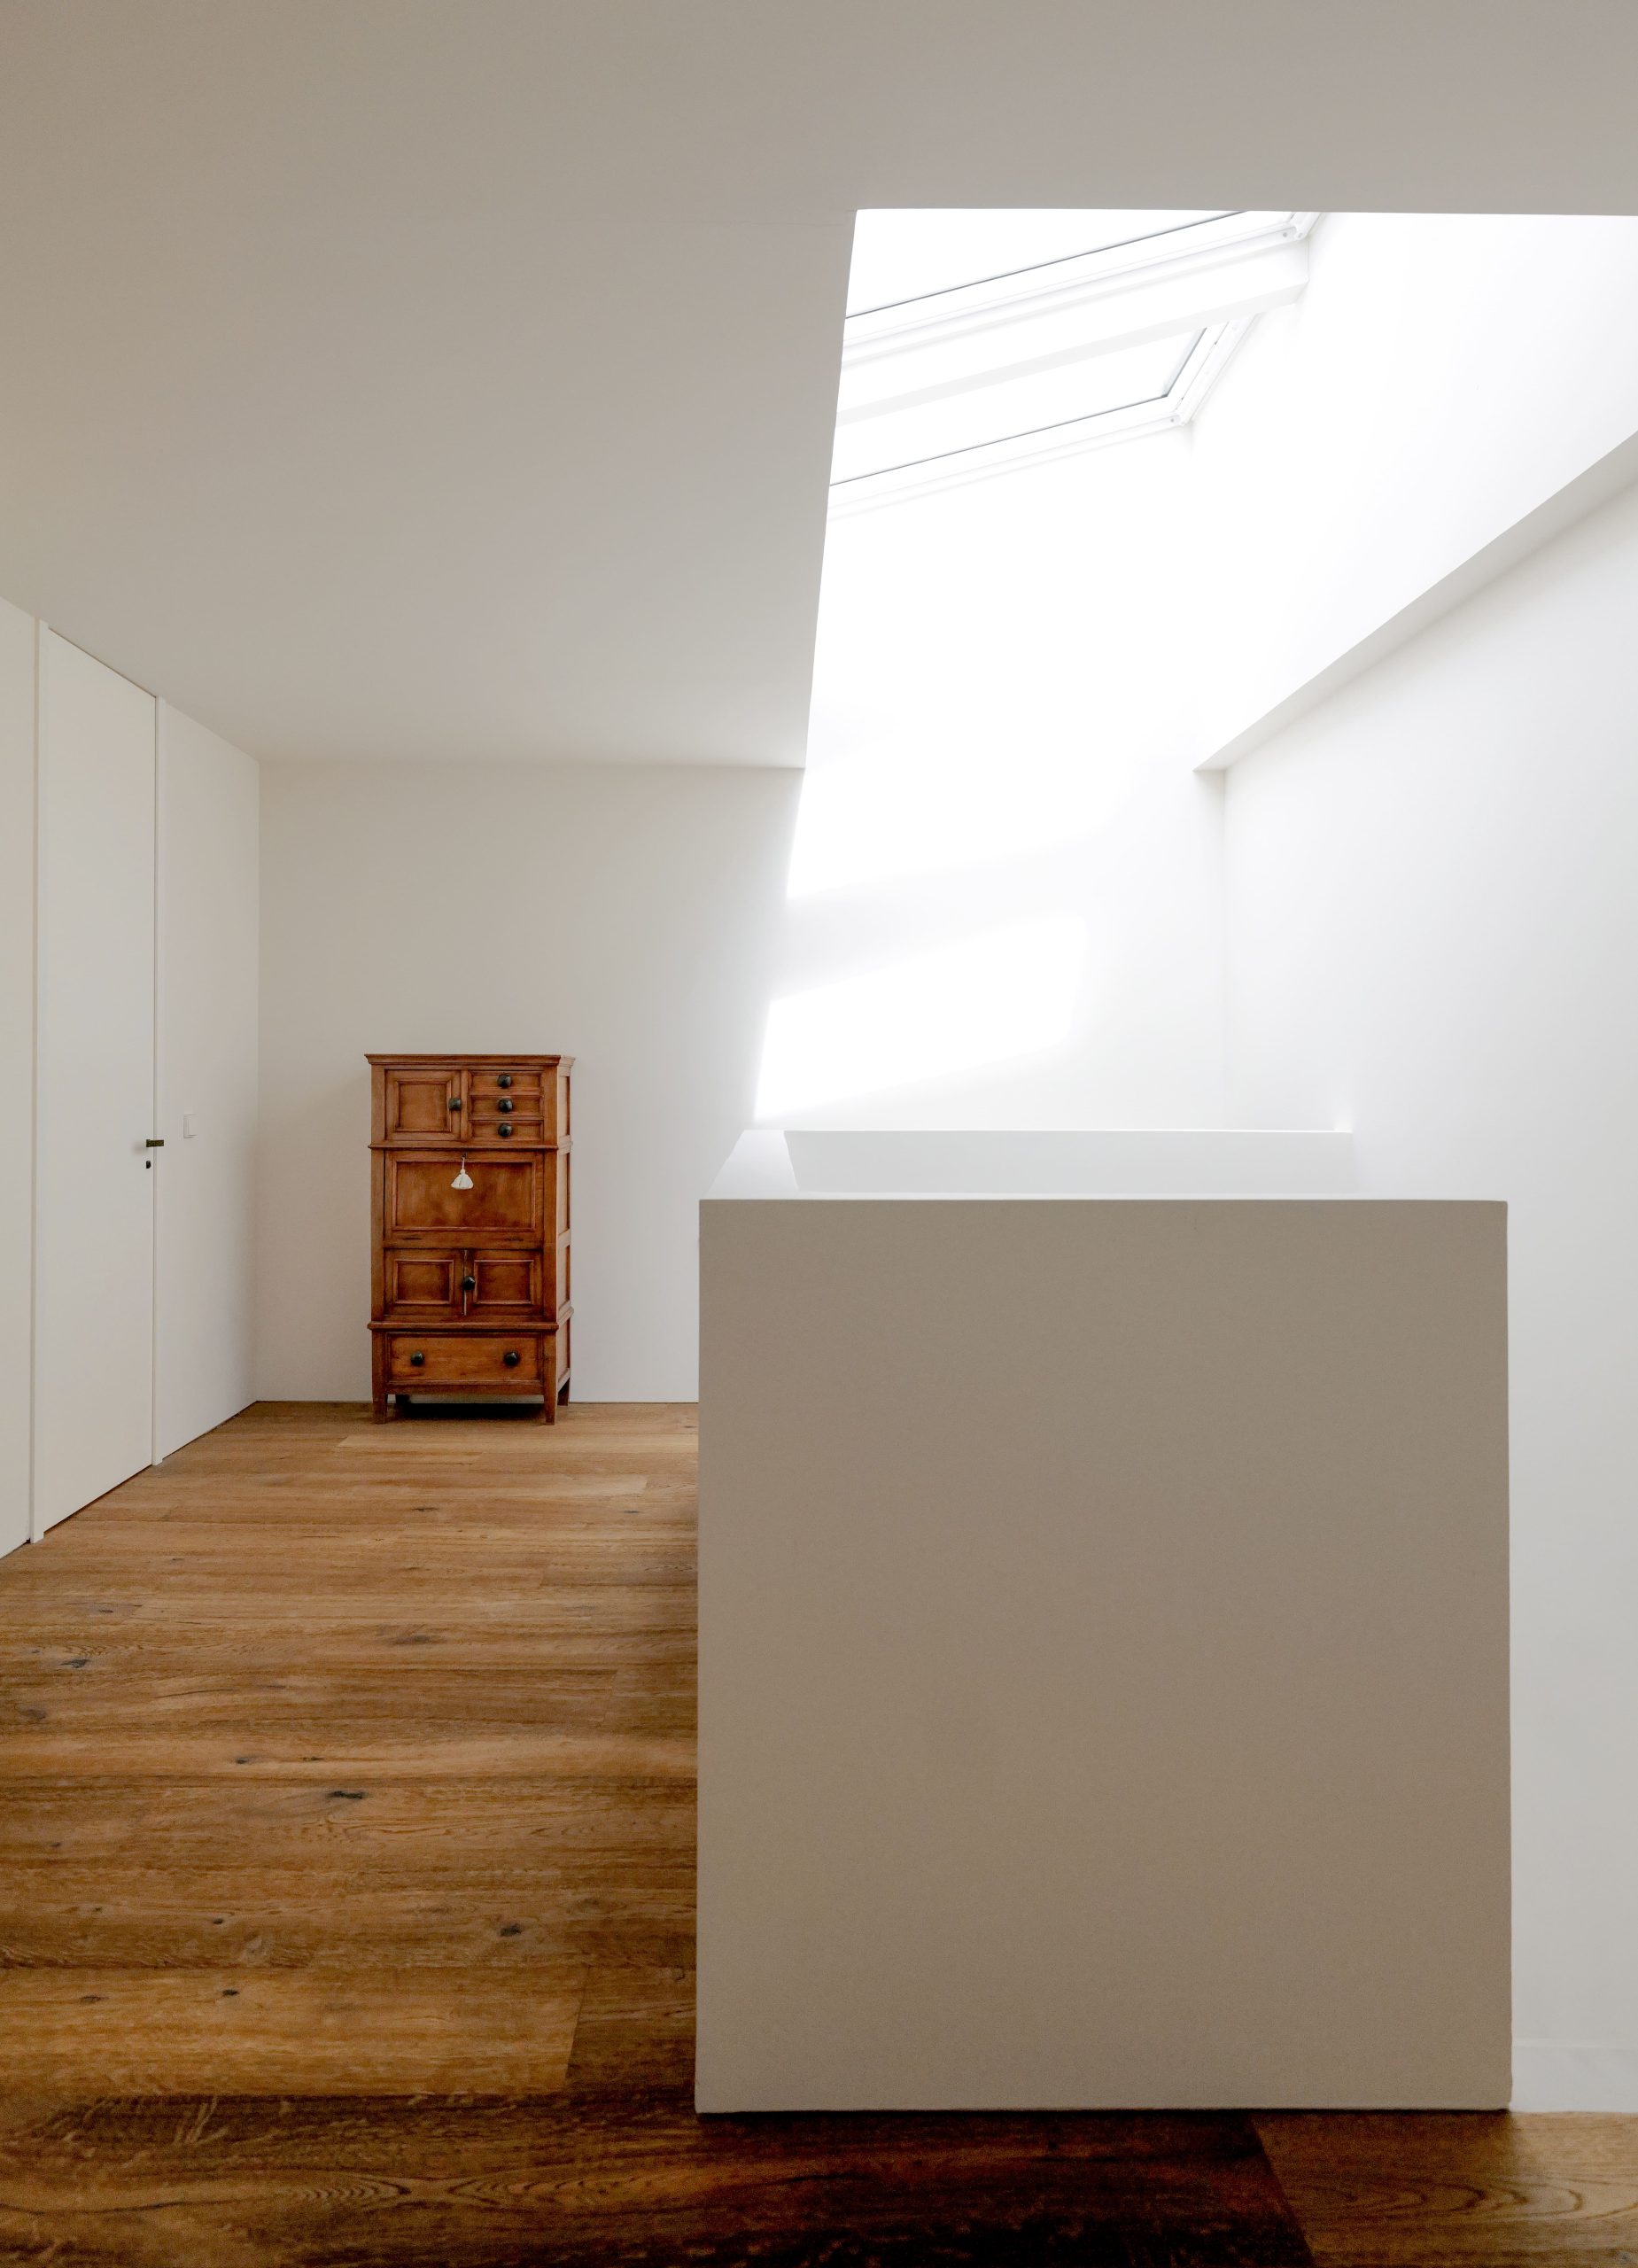 Interiorismo del proyecto de Tres Cantos del estudio de arquitectura KLARQ donde la decoración de madera destaca en los colores blancos de las paredes.